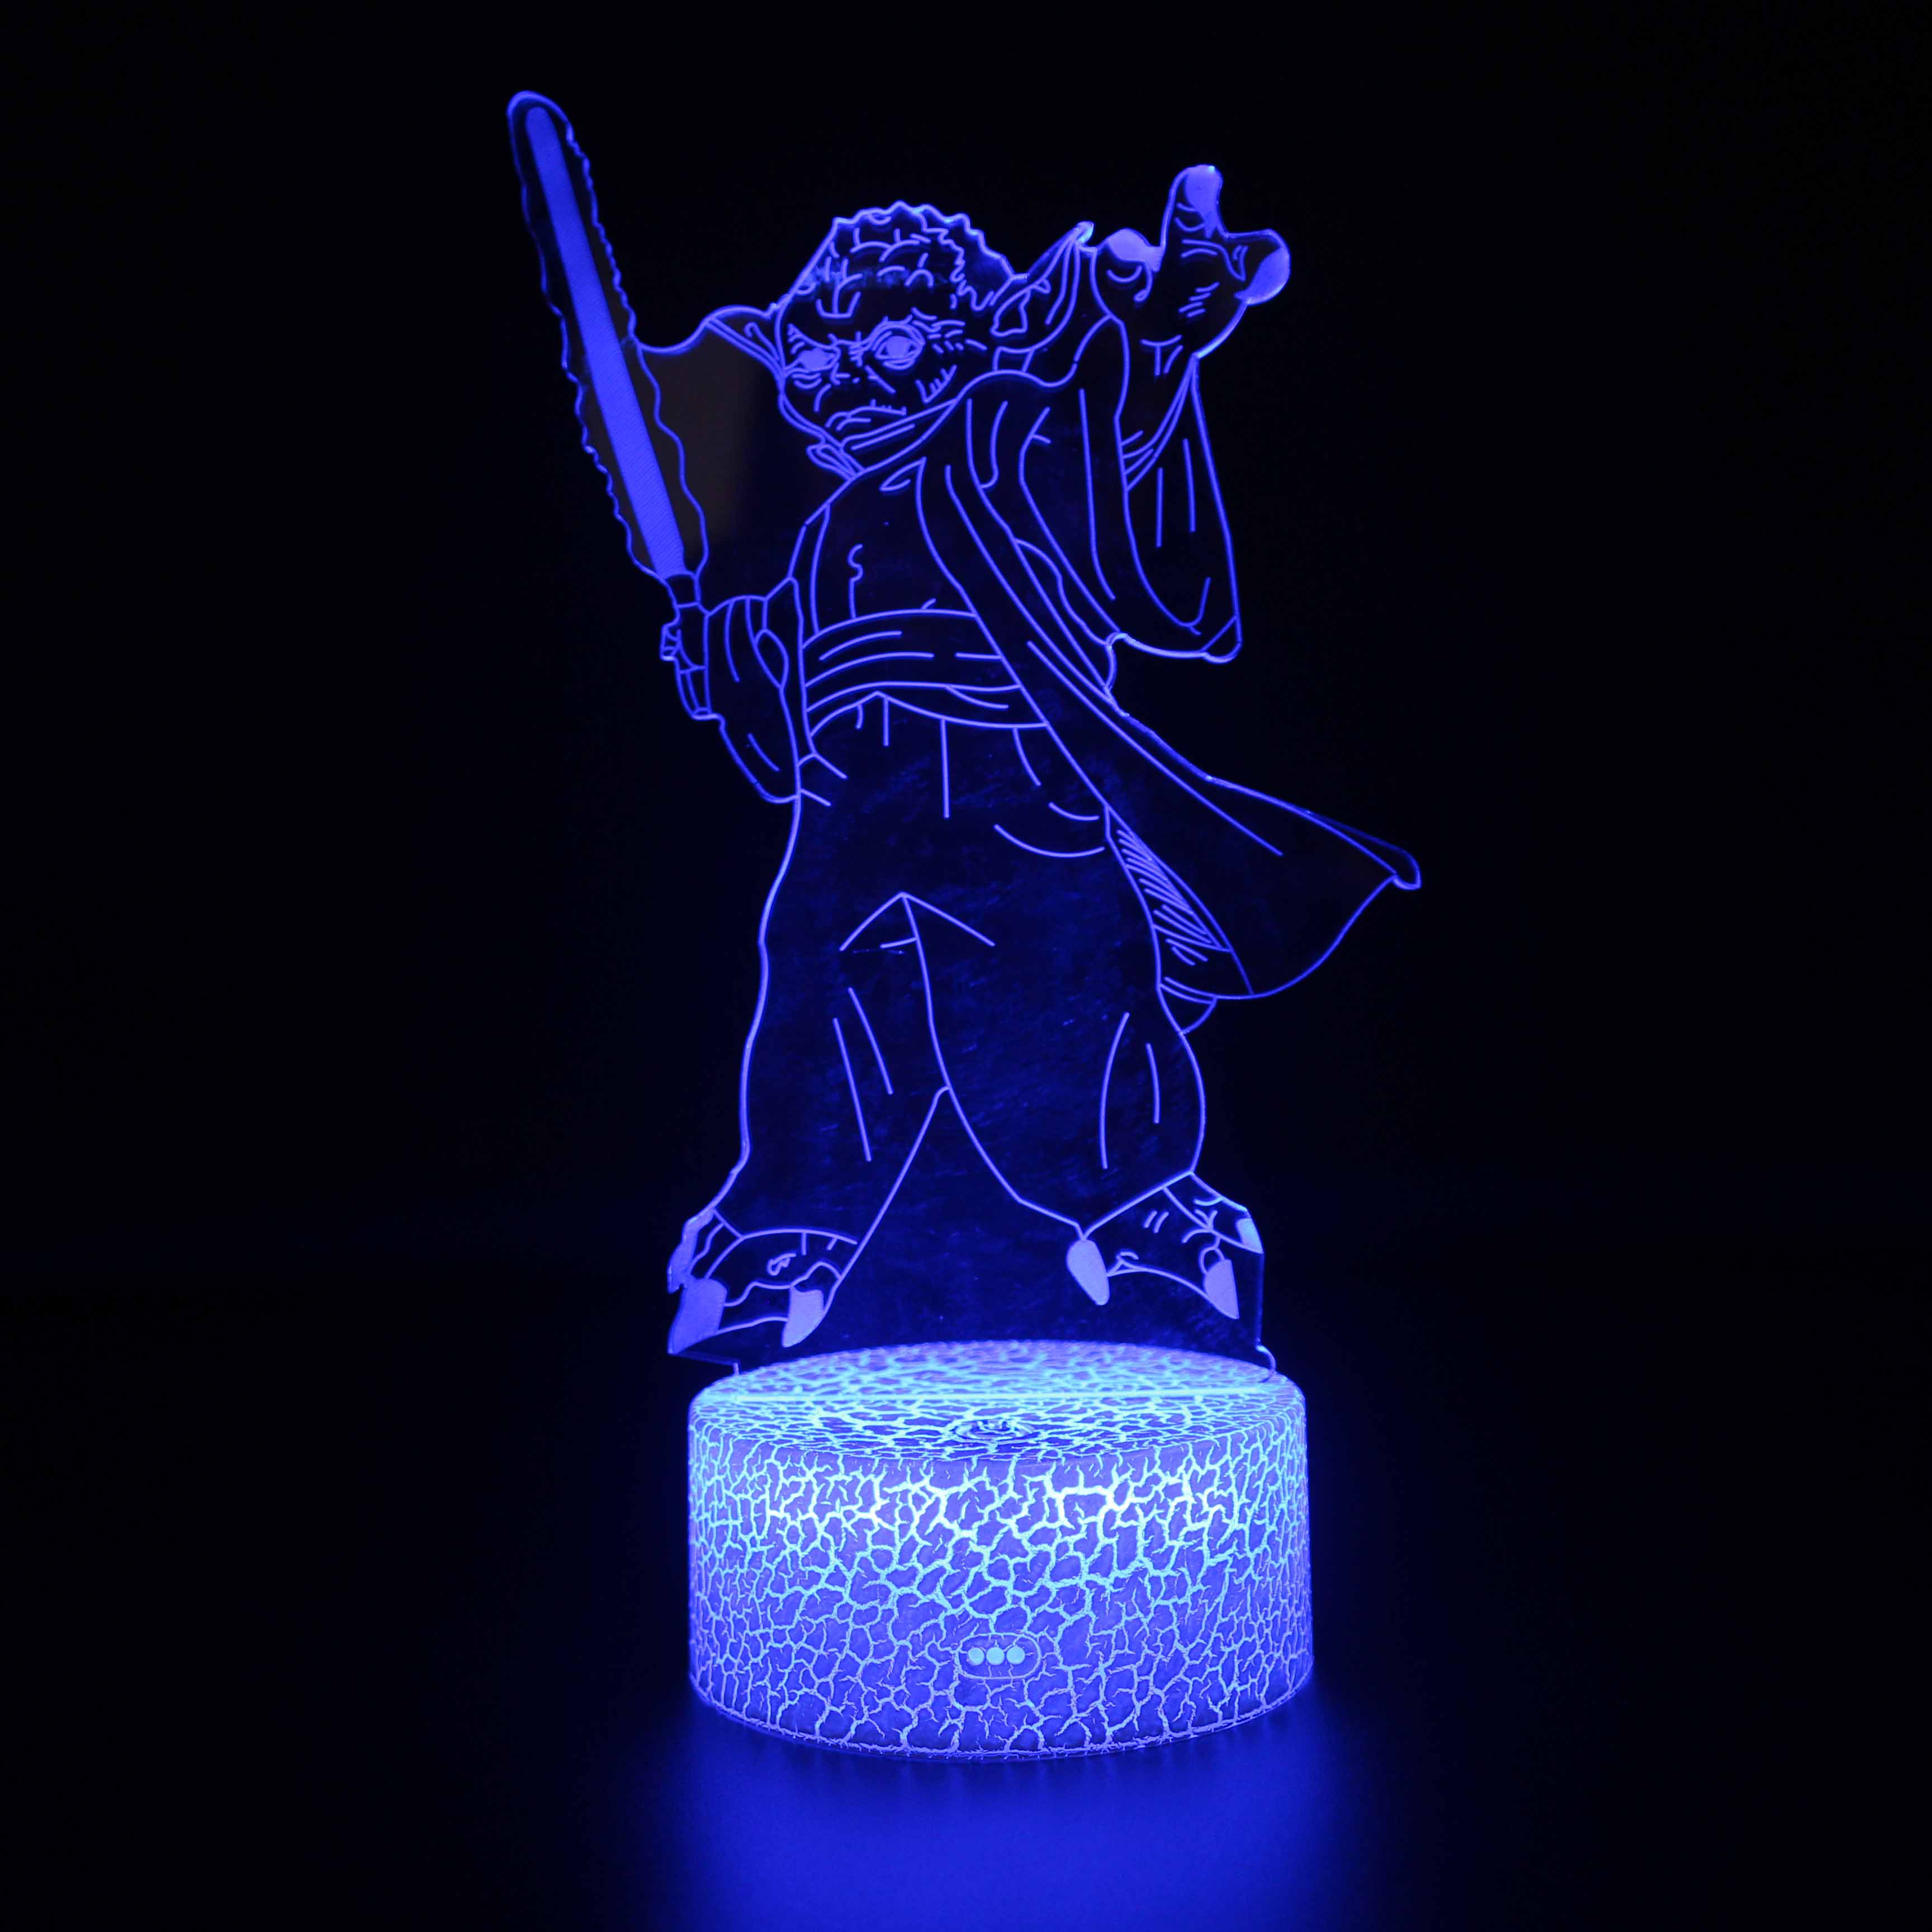 Star Wars Master Yoda 3D Night Light